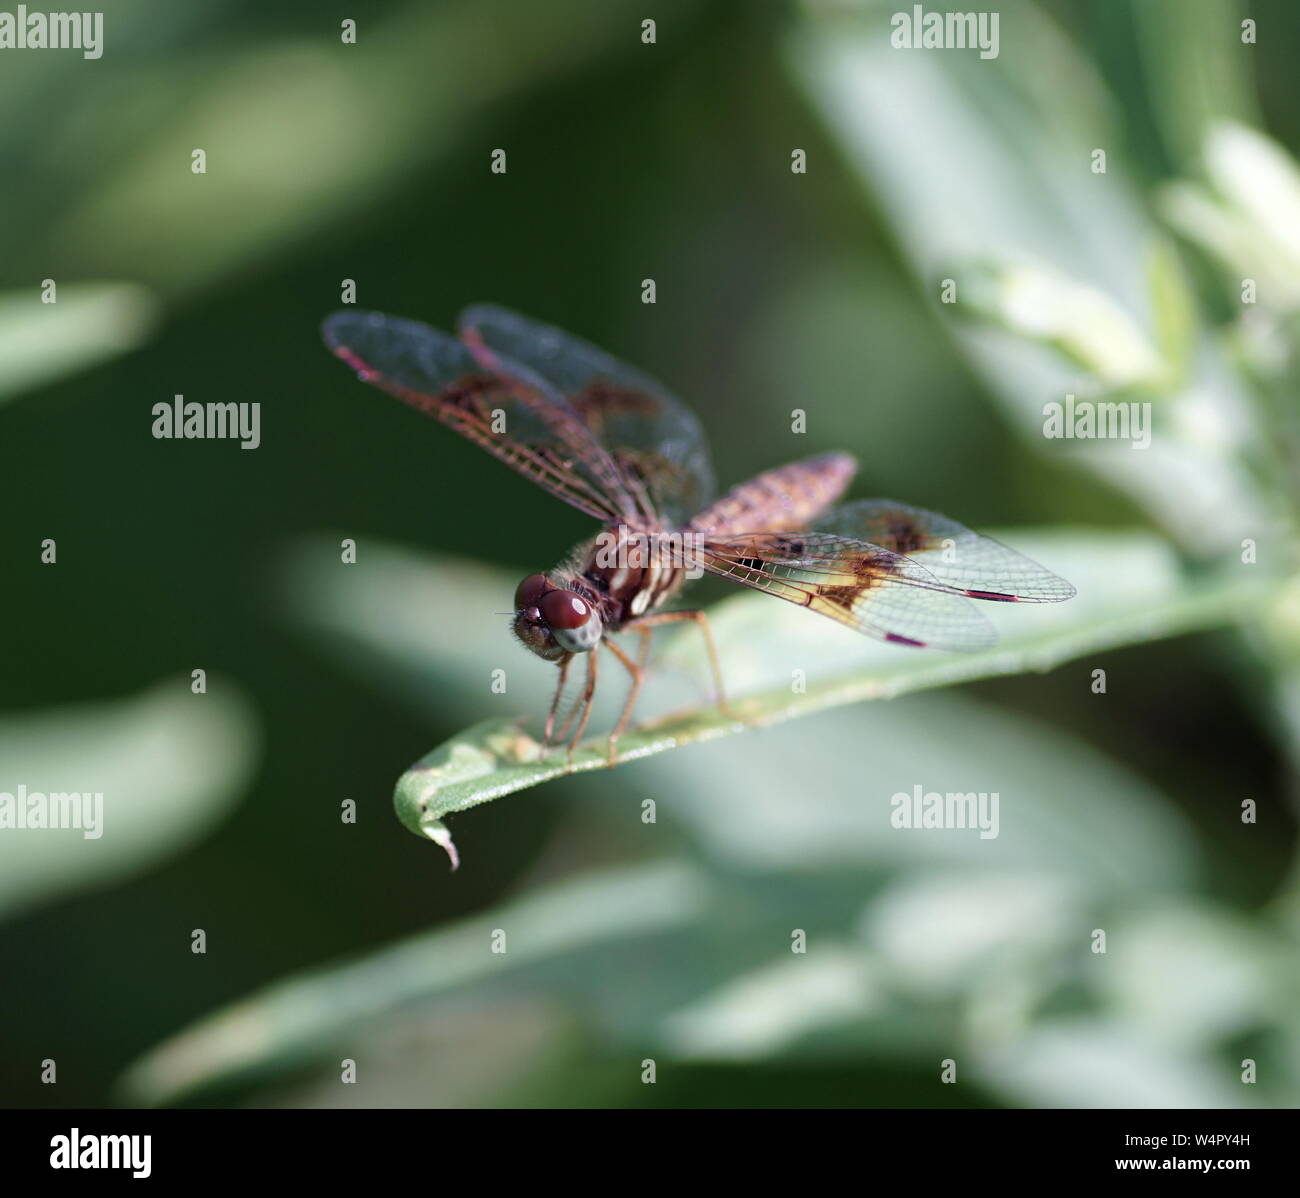 Foto de una libélula en reposo Foto de stock